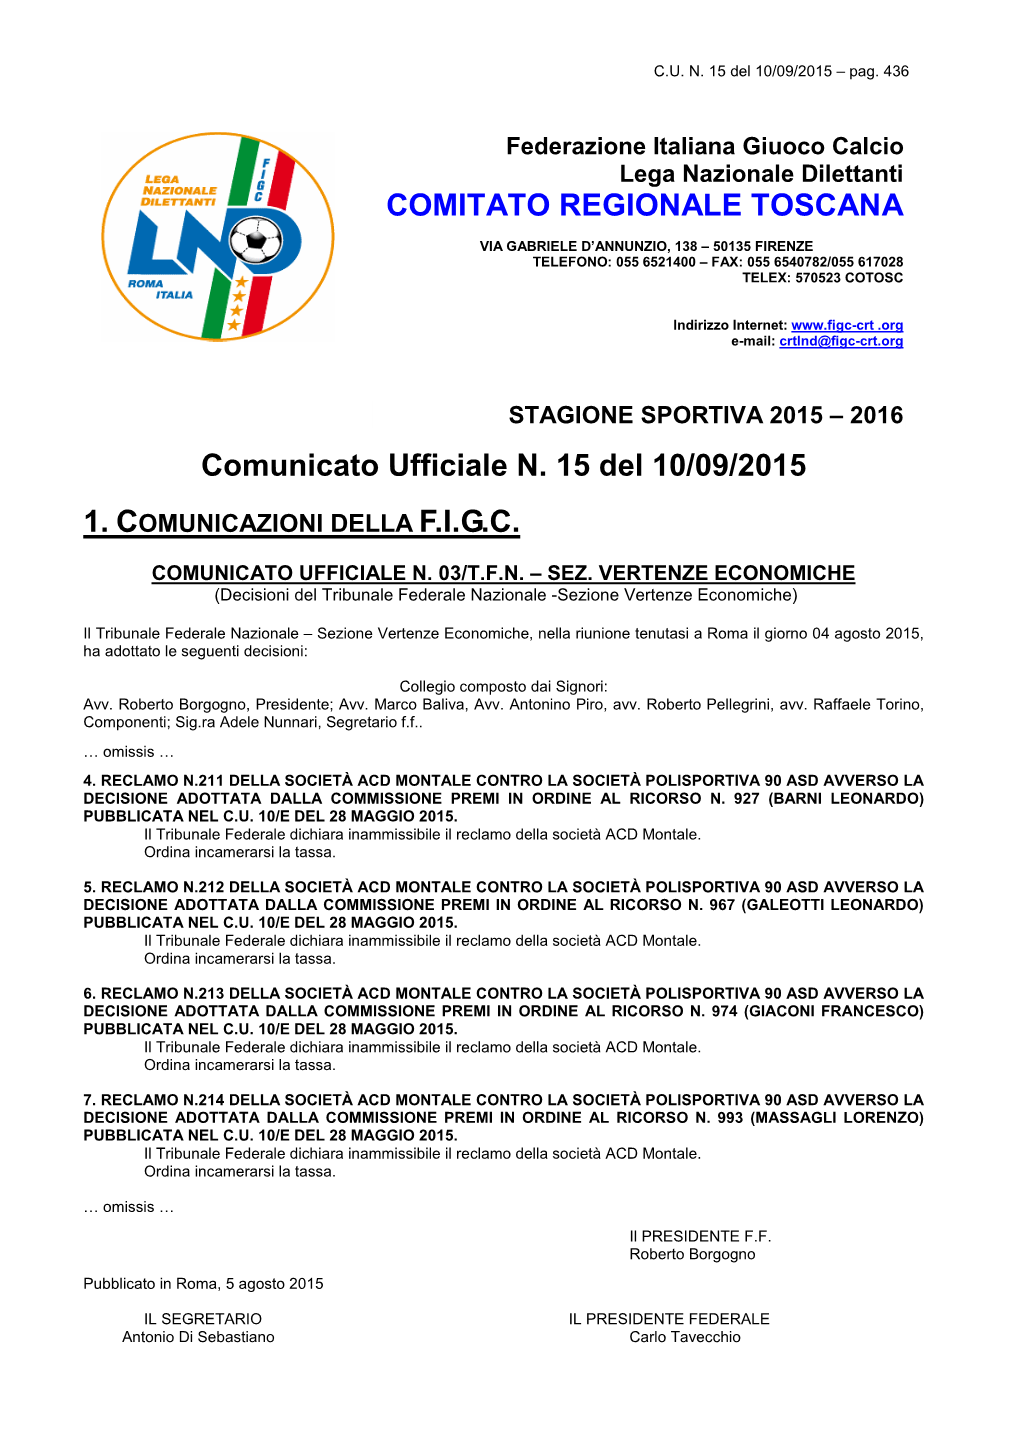 Comunicato Ufficiale N. 15 Del 10/09/2015 COMITATO